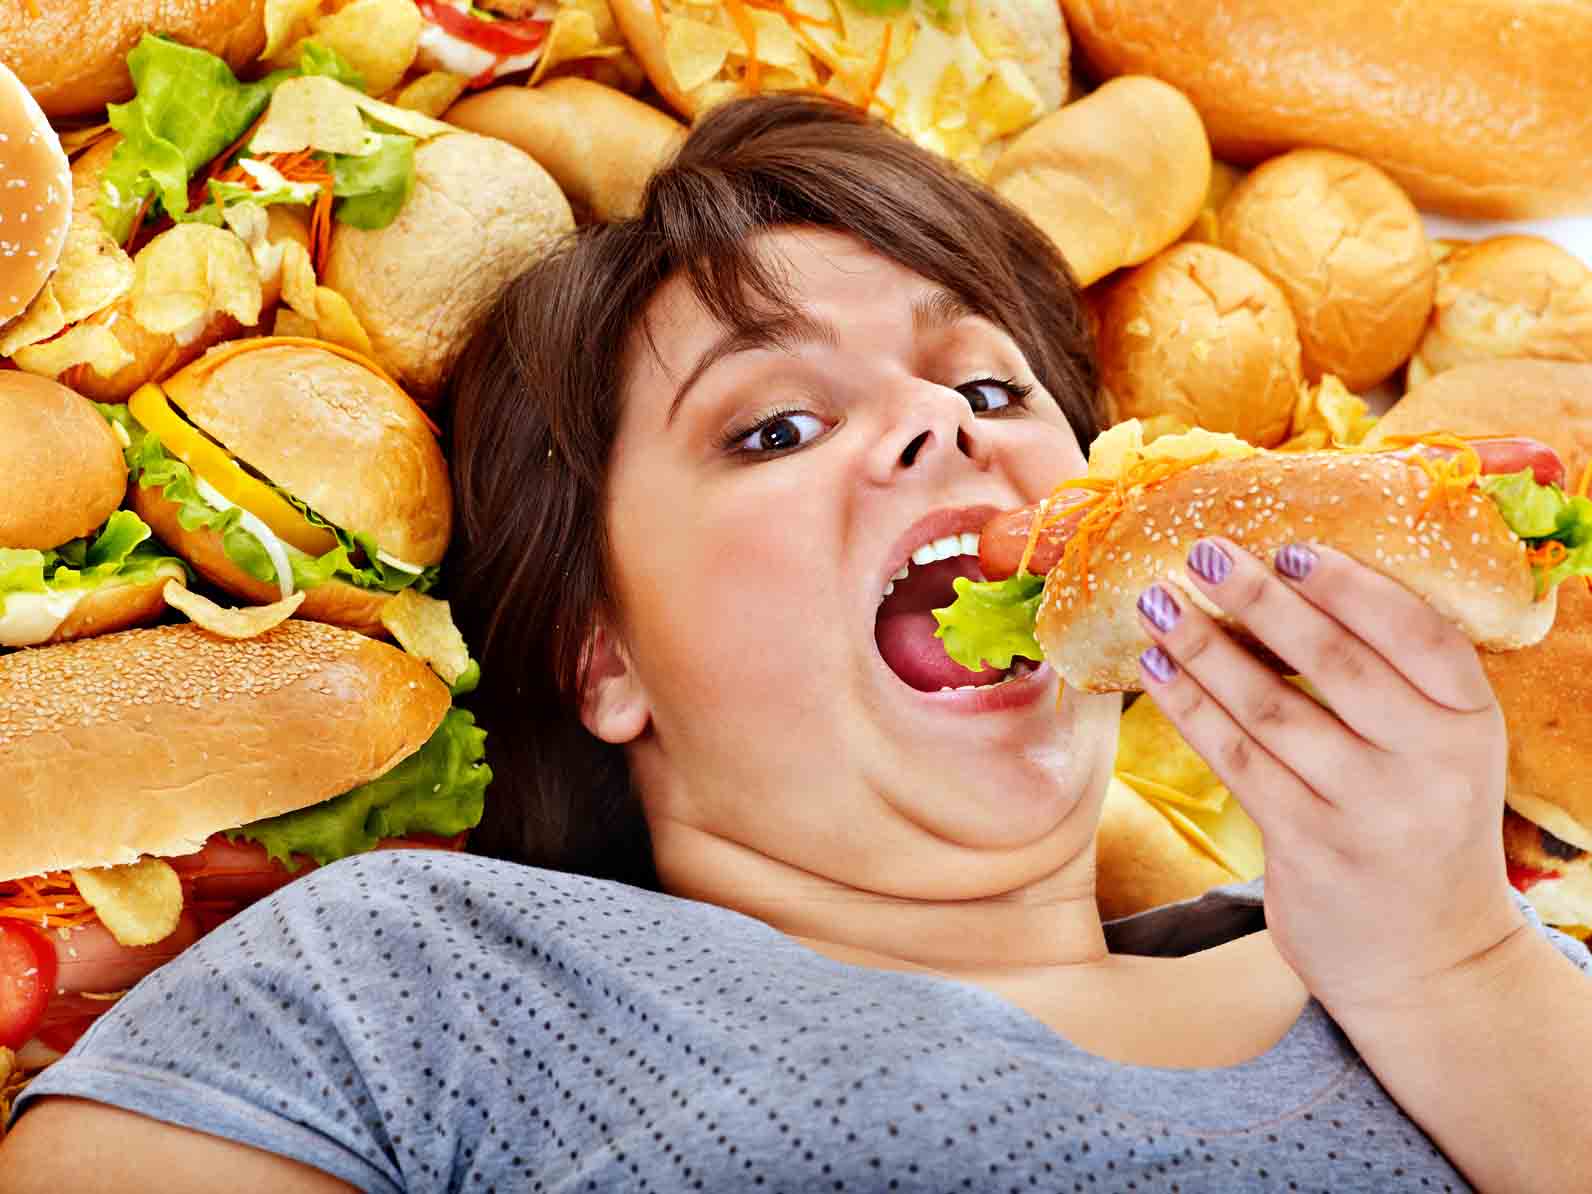 Появление большого количества холестерола становятся результатом нерационального питания и малоподвижного образа жизни